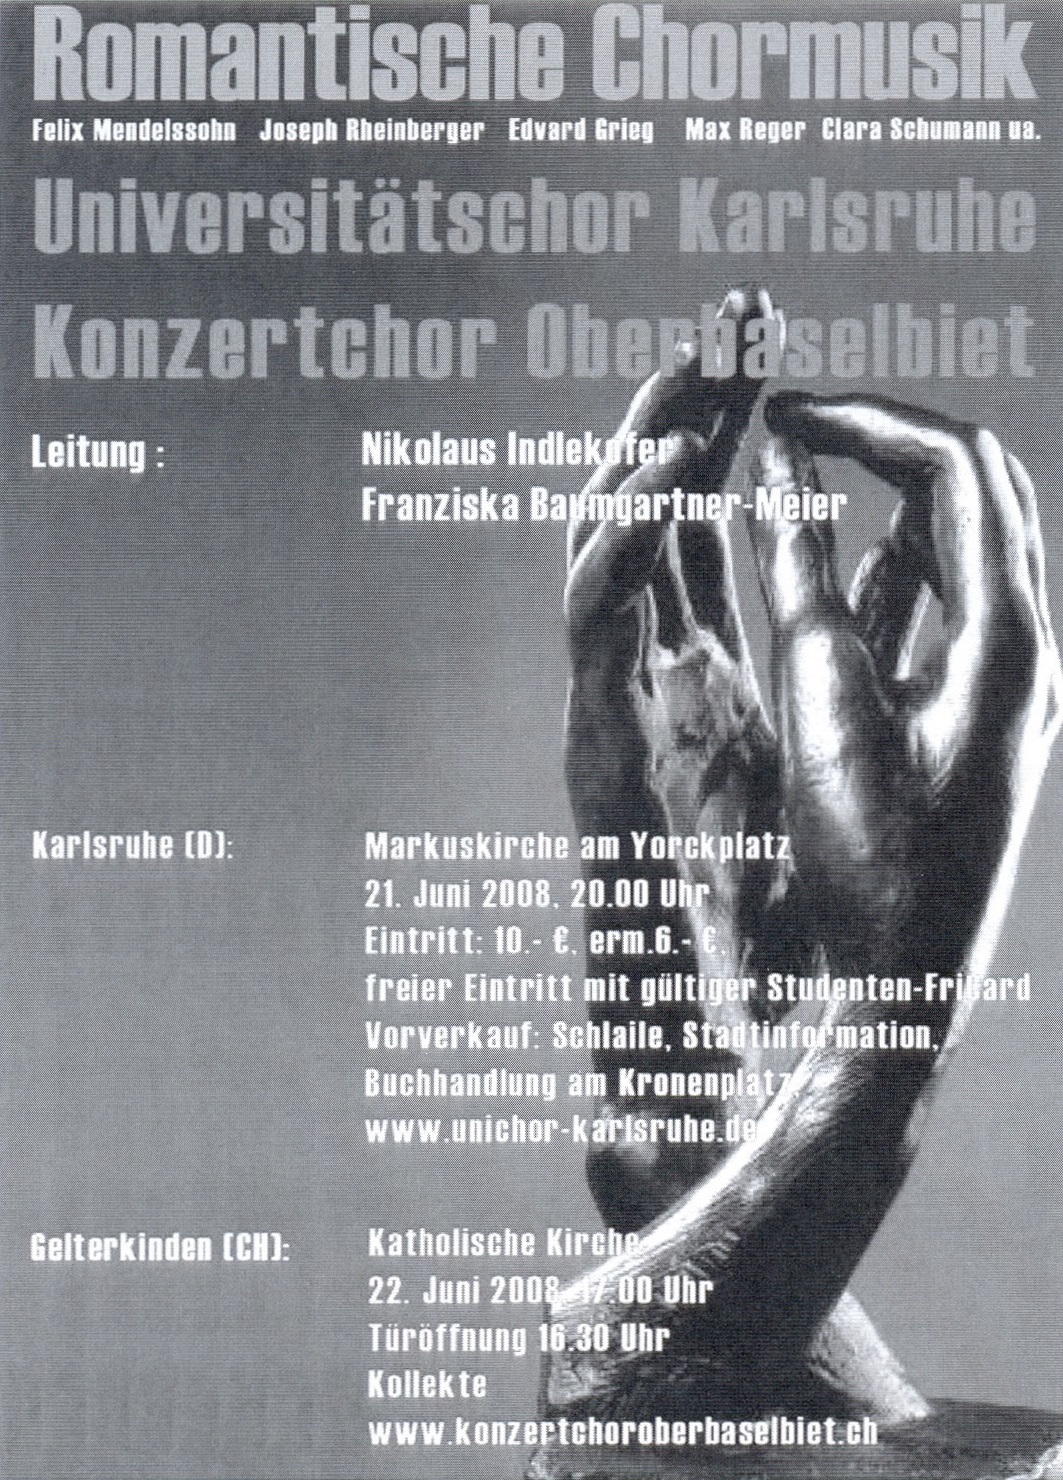 Plakat Romatische Chormusik 2008